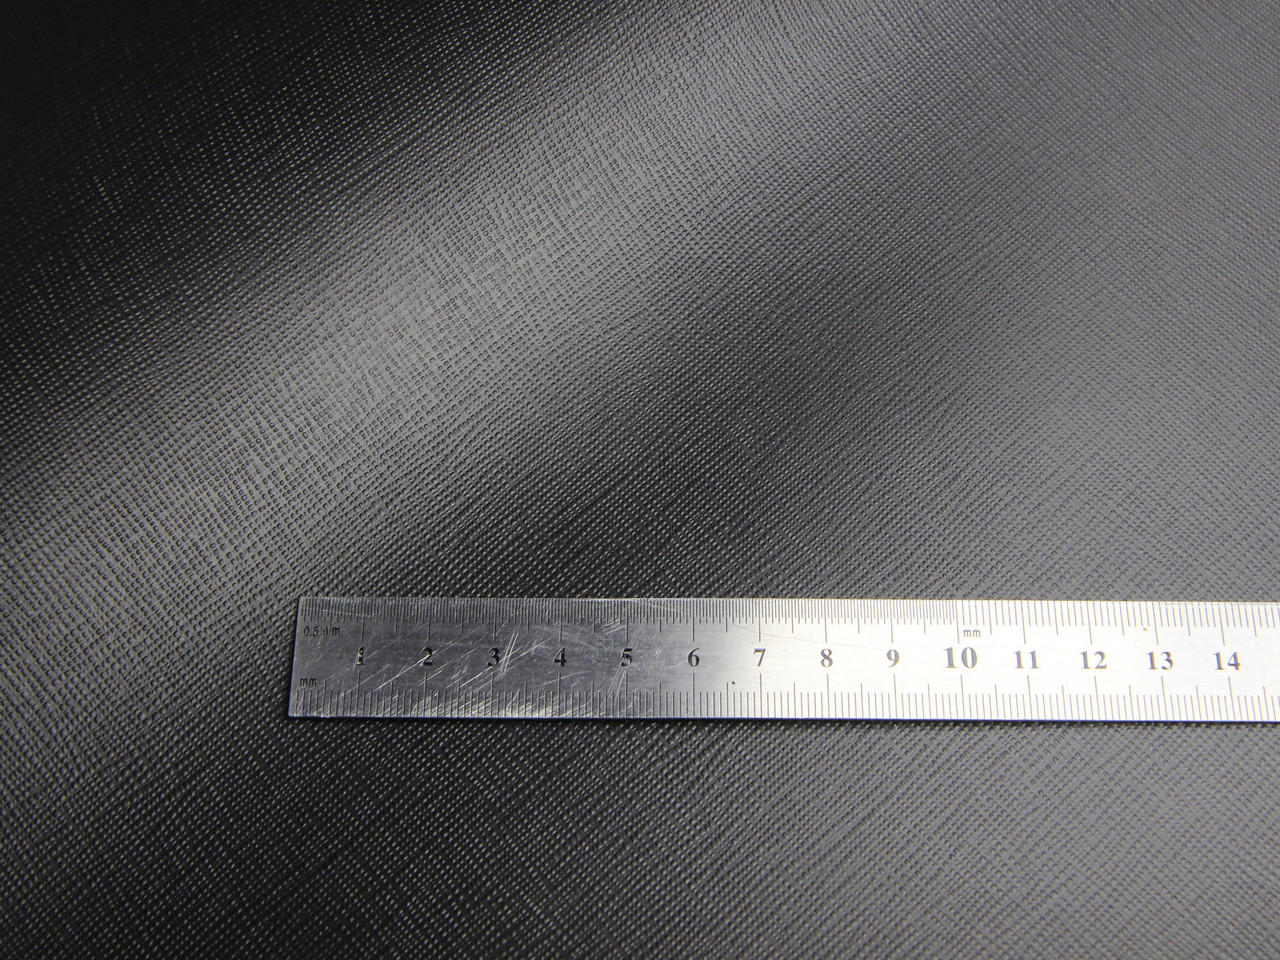 Термовинил черный (узор Сафиано tk-21) для перетяжки руля, дверных карт, на каучуковой основе, шир 140см детальная фотка